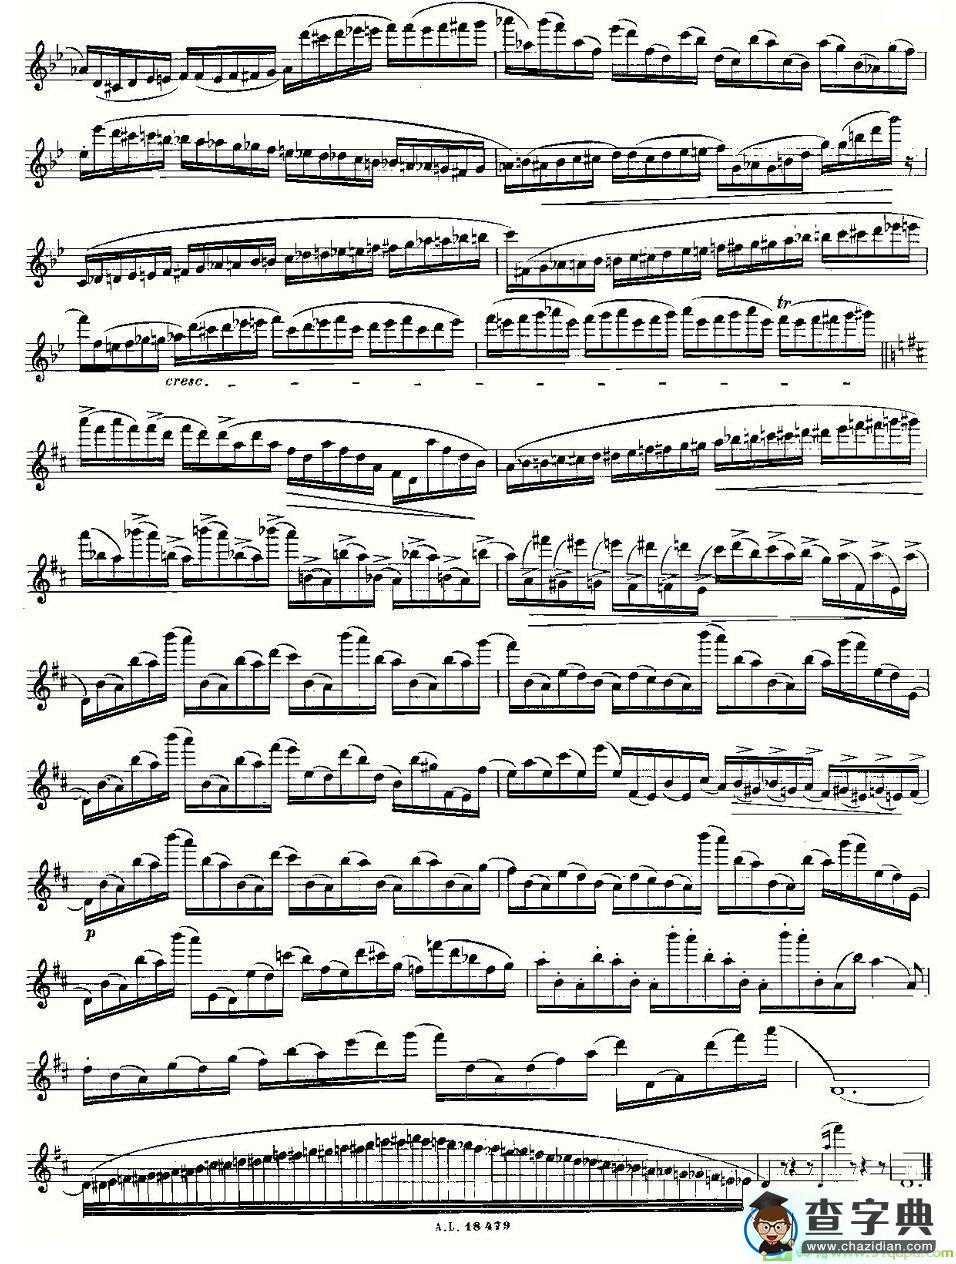 基于维尼亚夫斯基练习曲的10首长笛练习曲之6长笛谱(莫伊斯Moyse作曲)